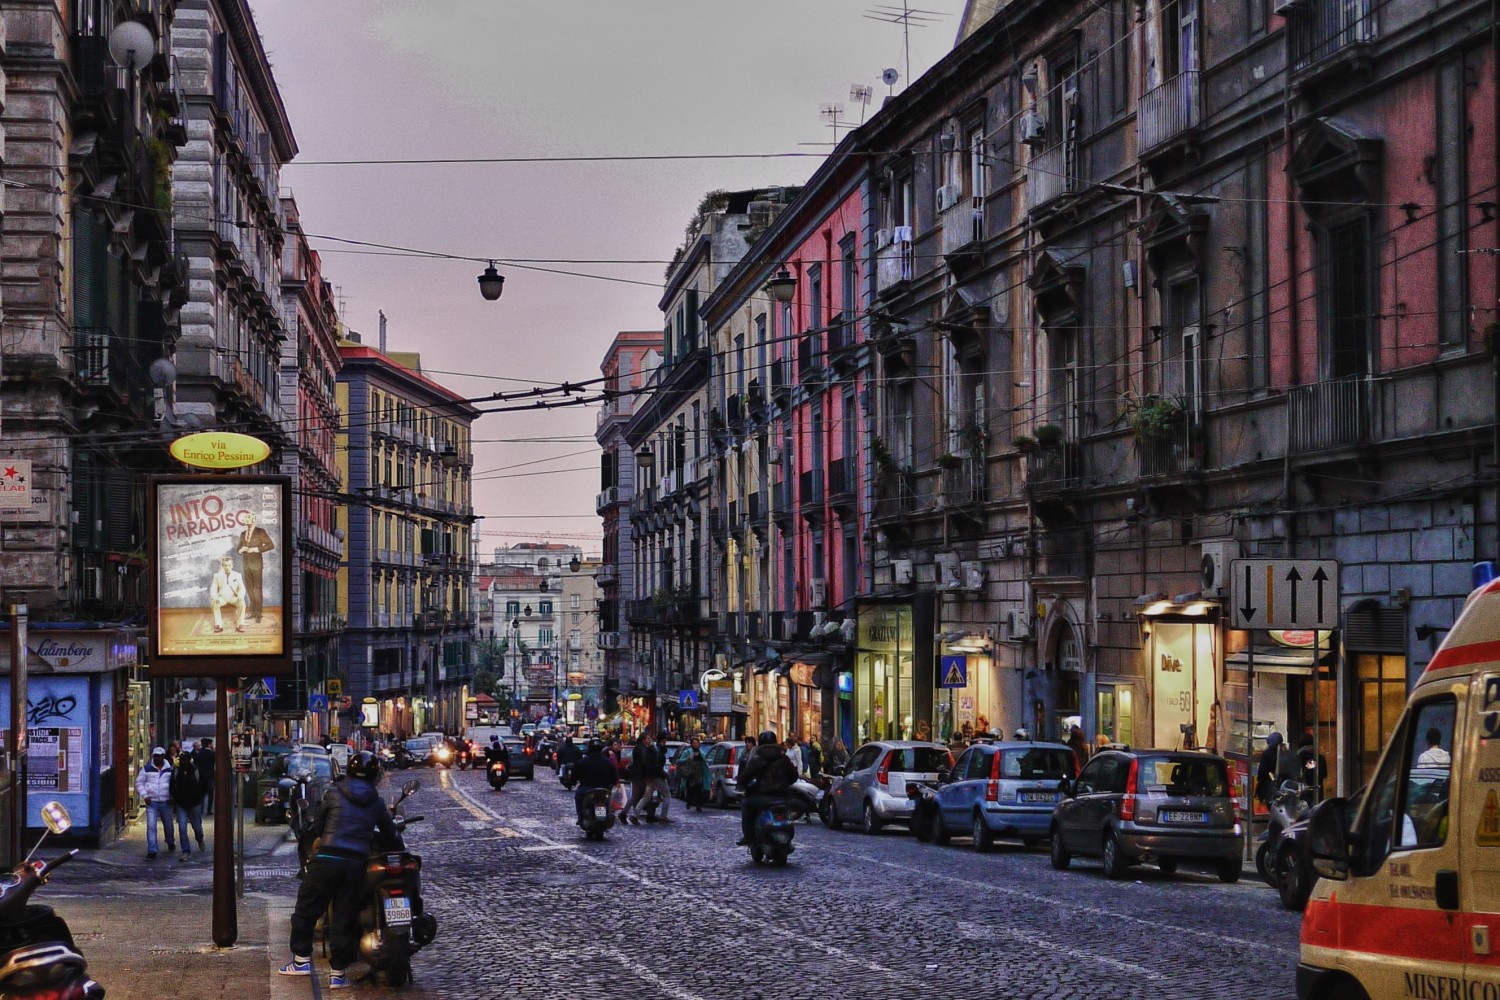  Napoli parte da oggi il piano antismog, Ciro Esposito: “La città sta rispondendo bene”